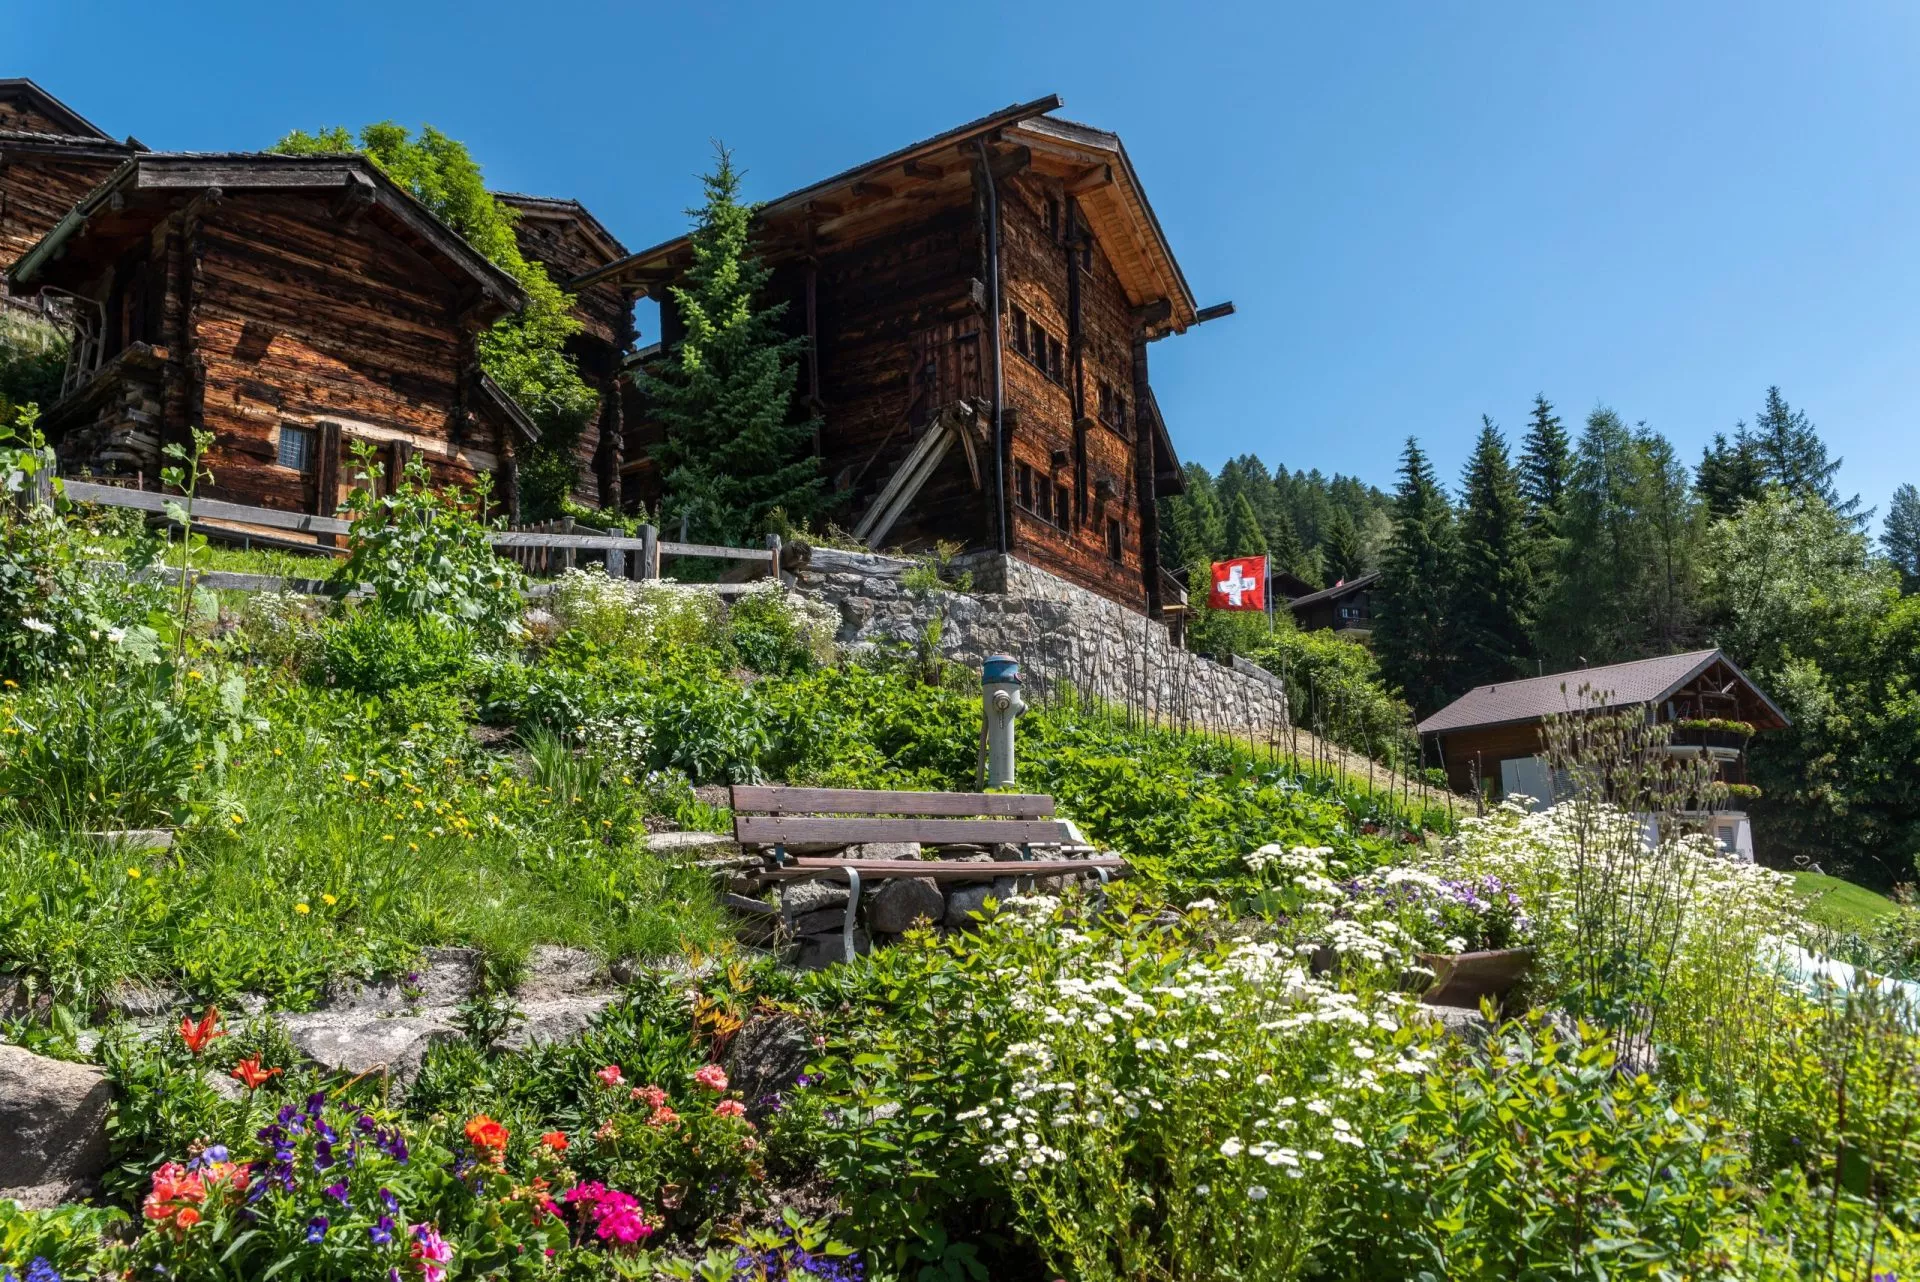 paesaggio urbano di bellwald con le tipiche case vallesane in legno